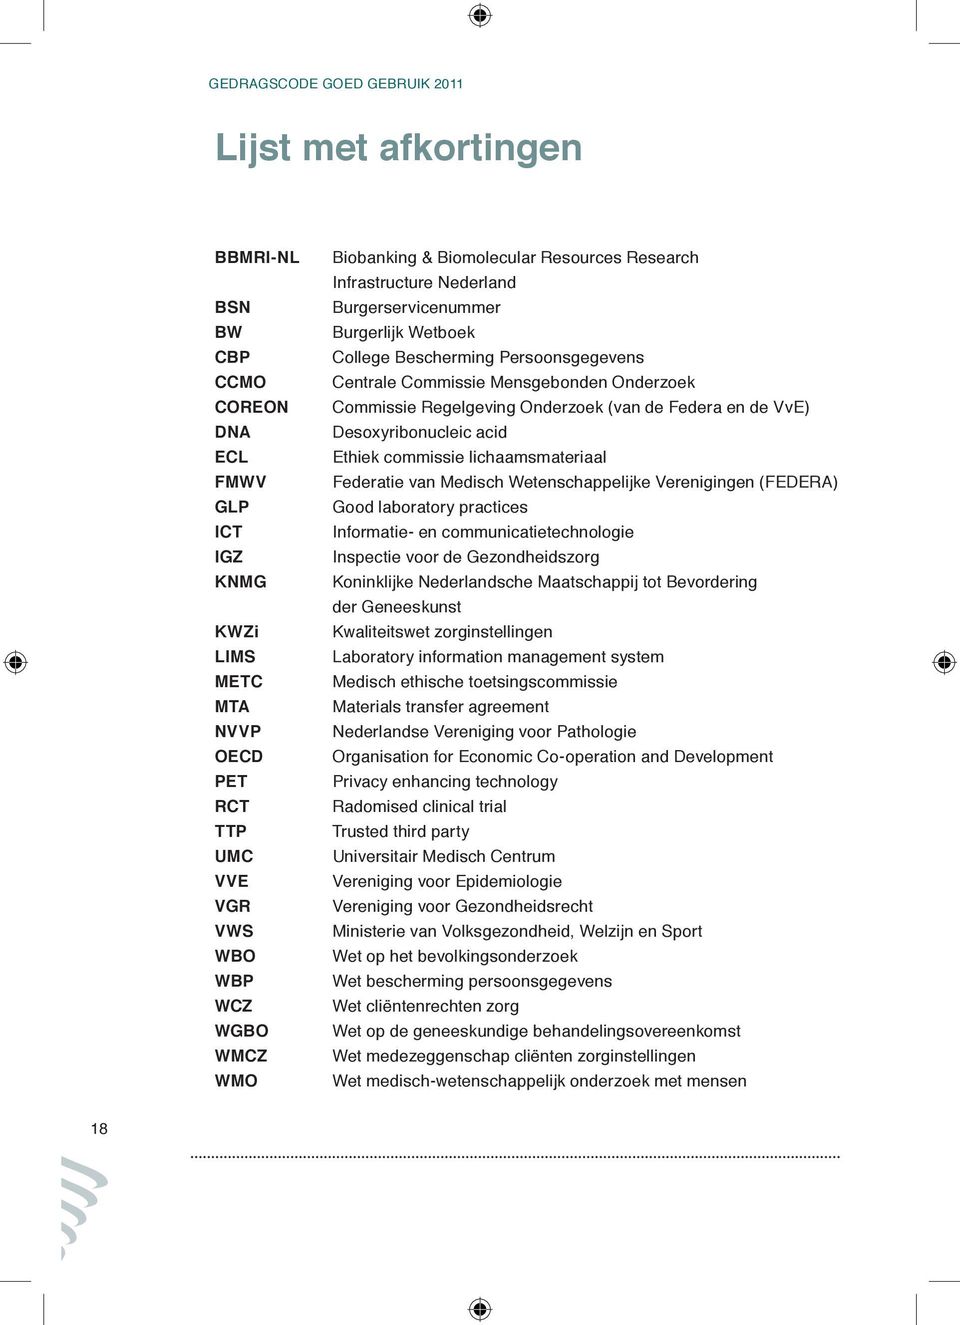 Regelgeving Onderzoek (van de Federa en de VvE) Desoxyribonucleic acid Ethiek commissie lichaamsmateriaal Federatie van Medisch Wetenschappelijke Verenigingen (FEDERA) Good laboratory practices